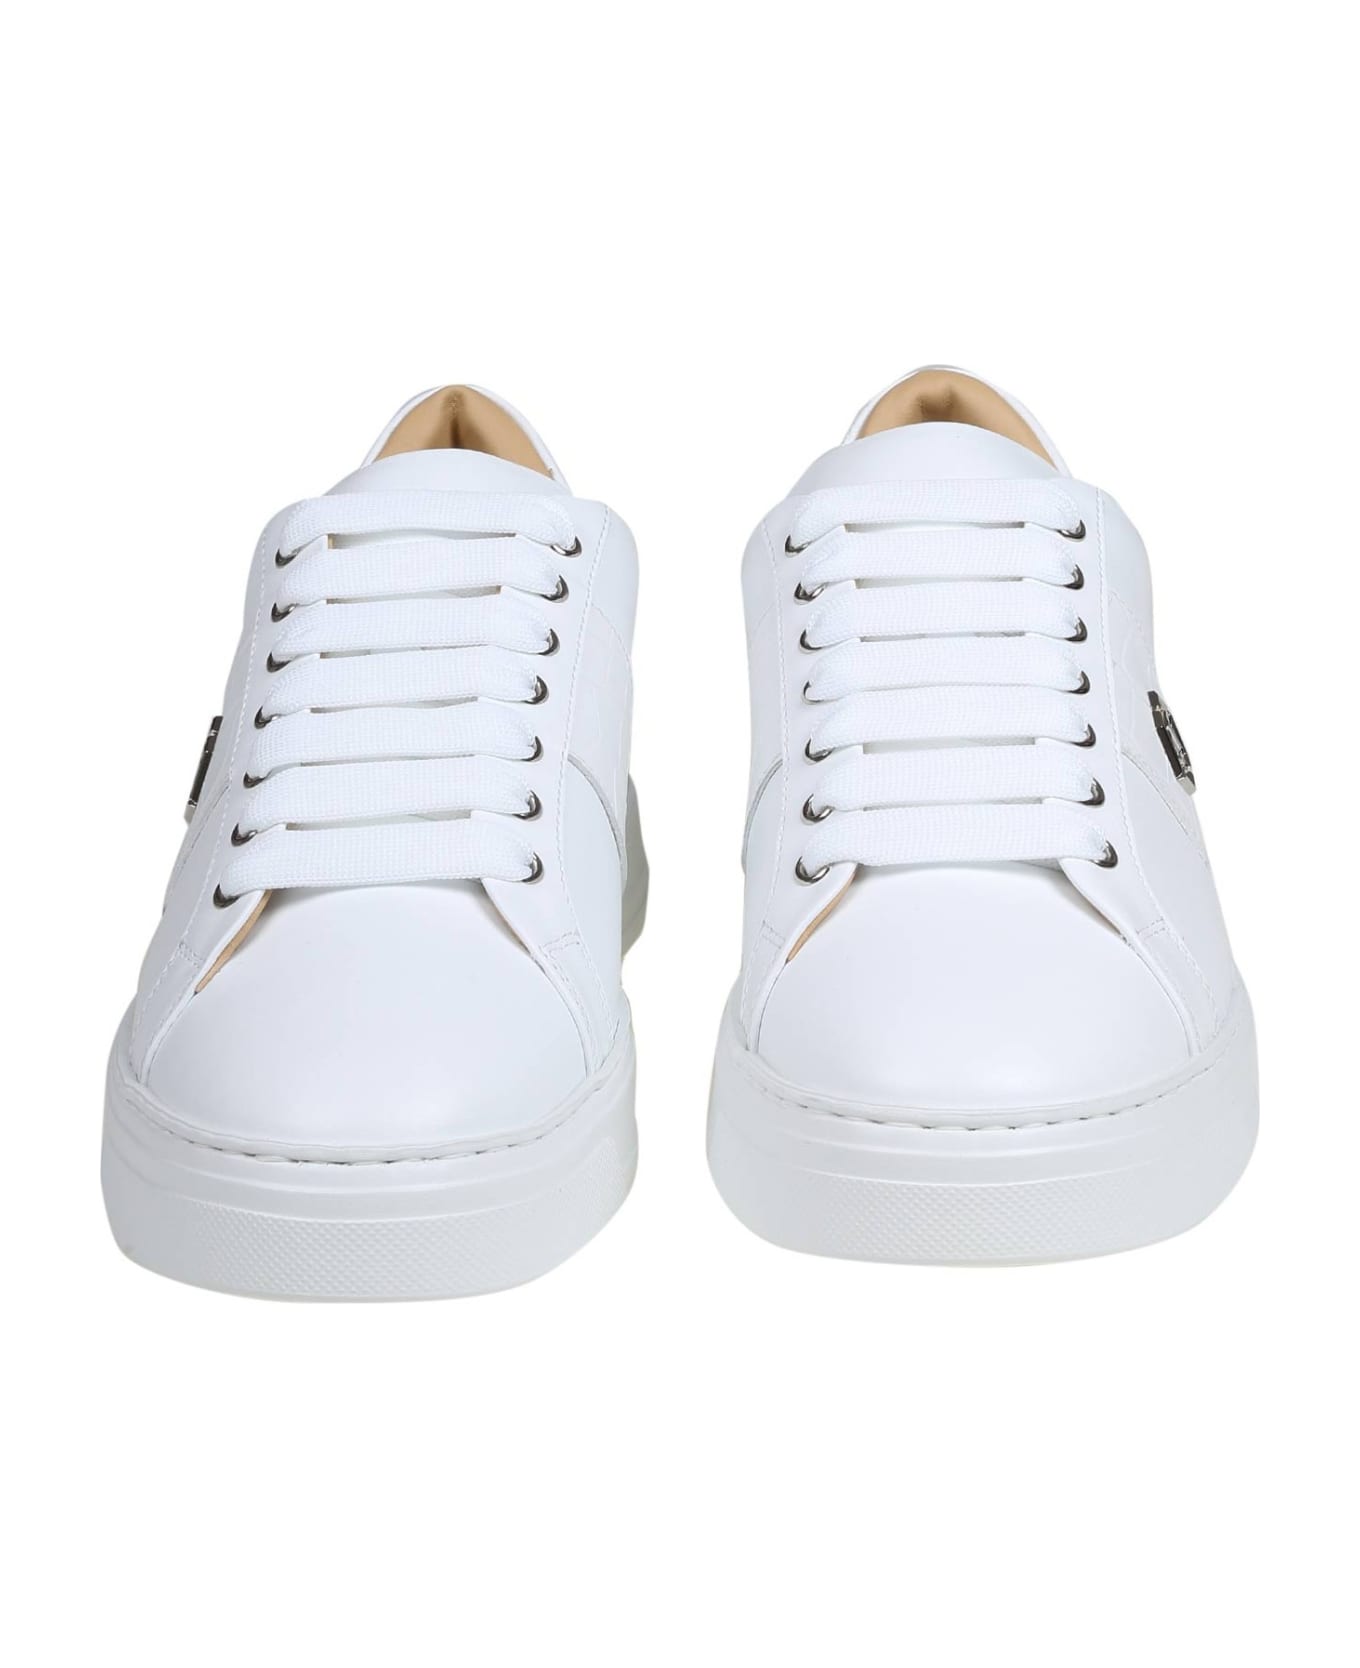 Philipp Plein Hexagon Sneakers In White Leather - White/White